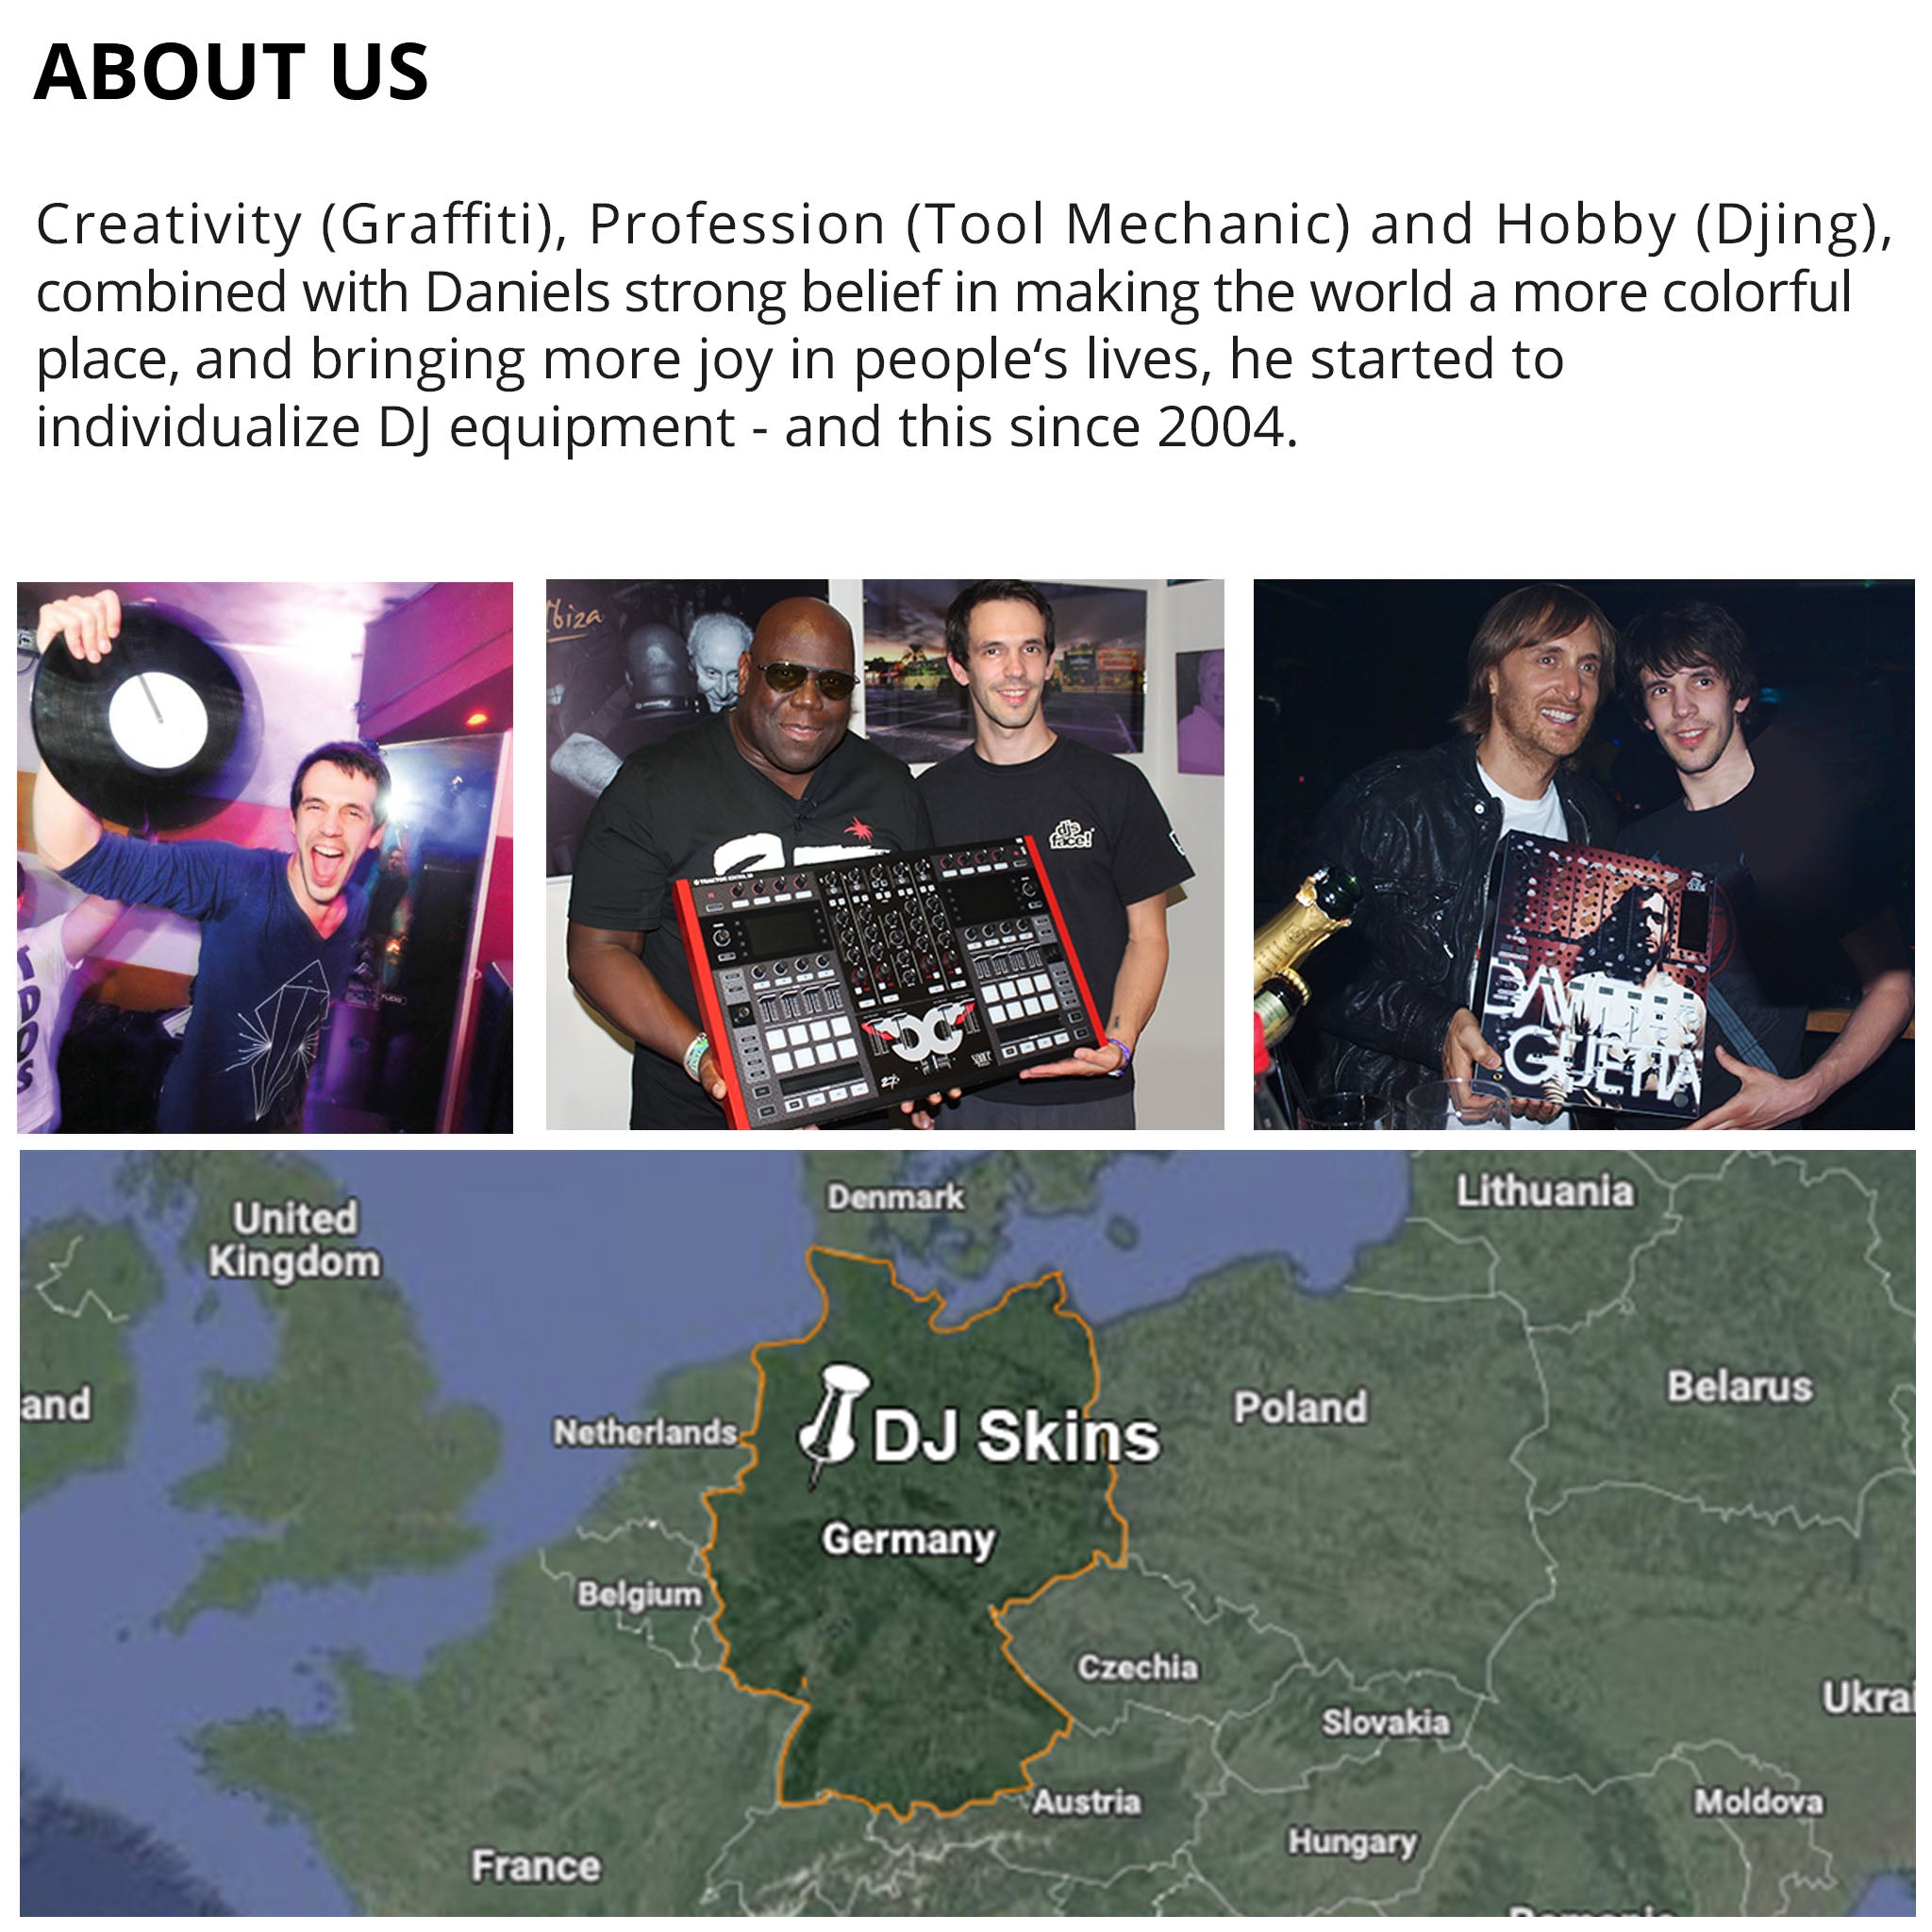 Pioneer DJ RMX 1000 Skin Ridge Red